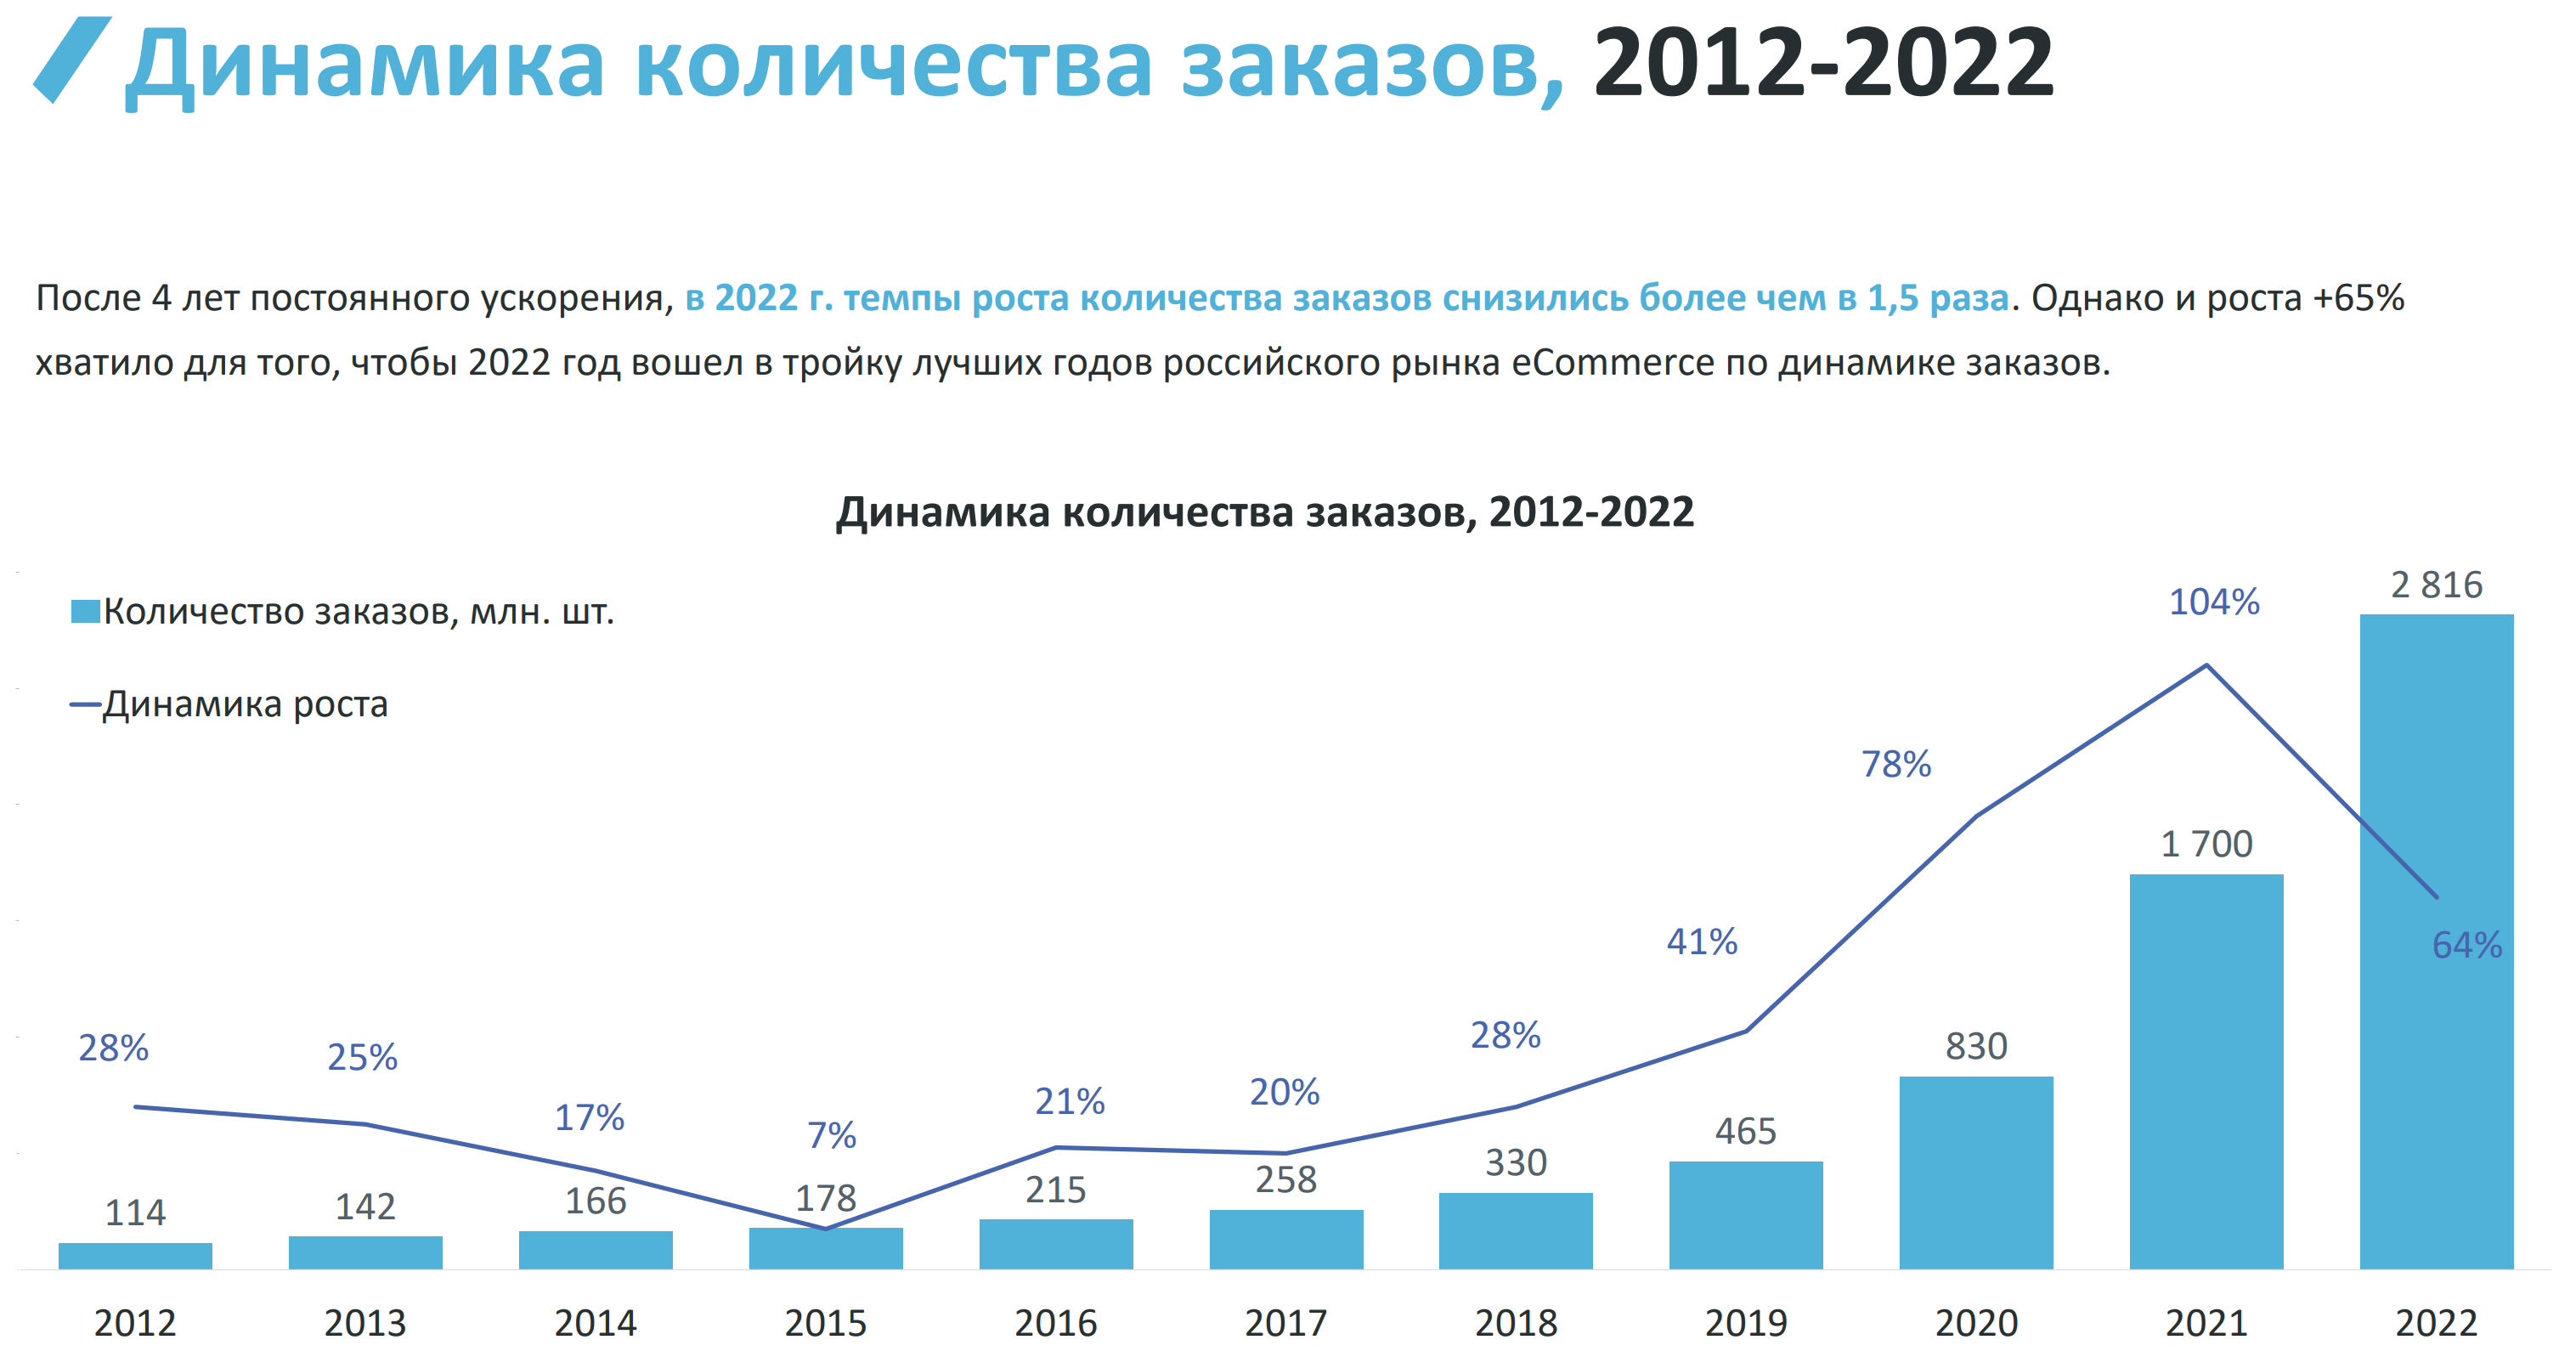 Контент маркетинг в 2024 году - прогнозы и тенденции изменений на рынке через 10 лет